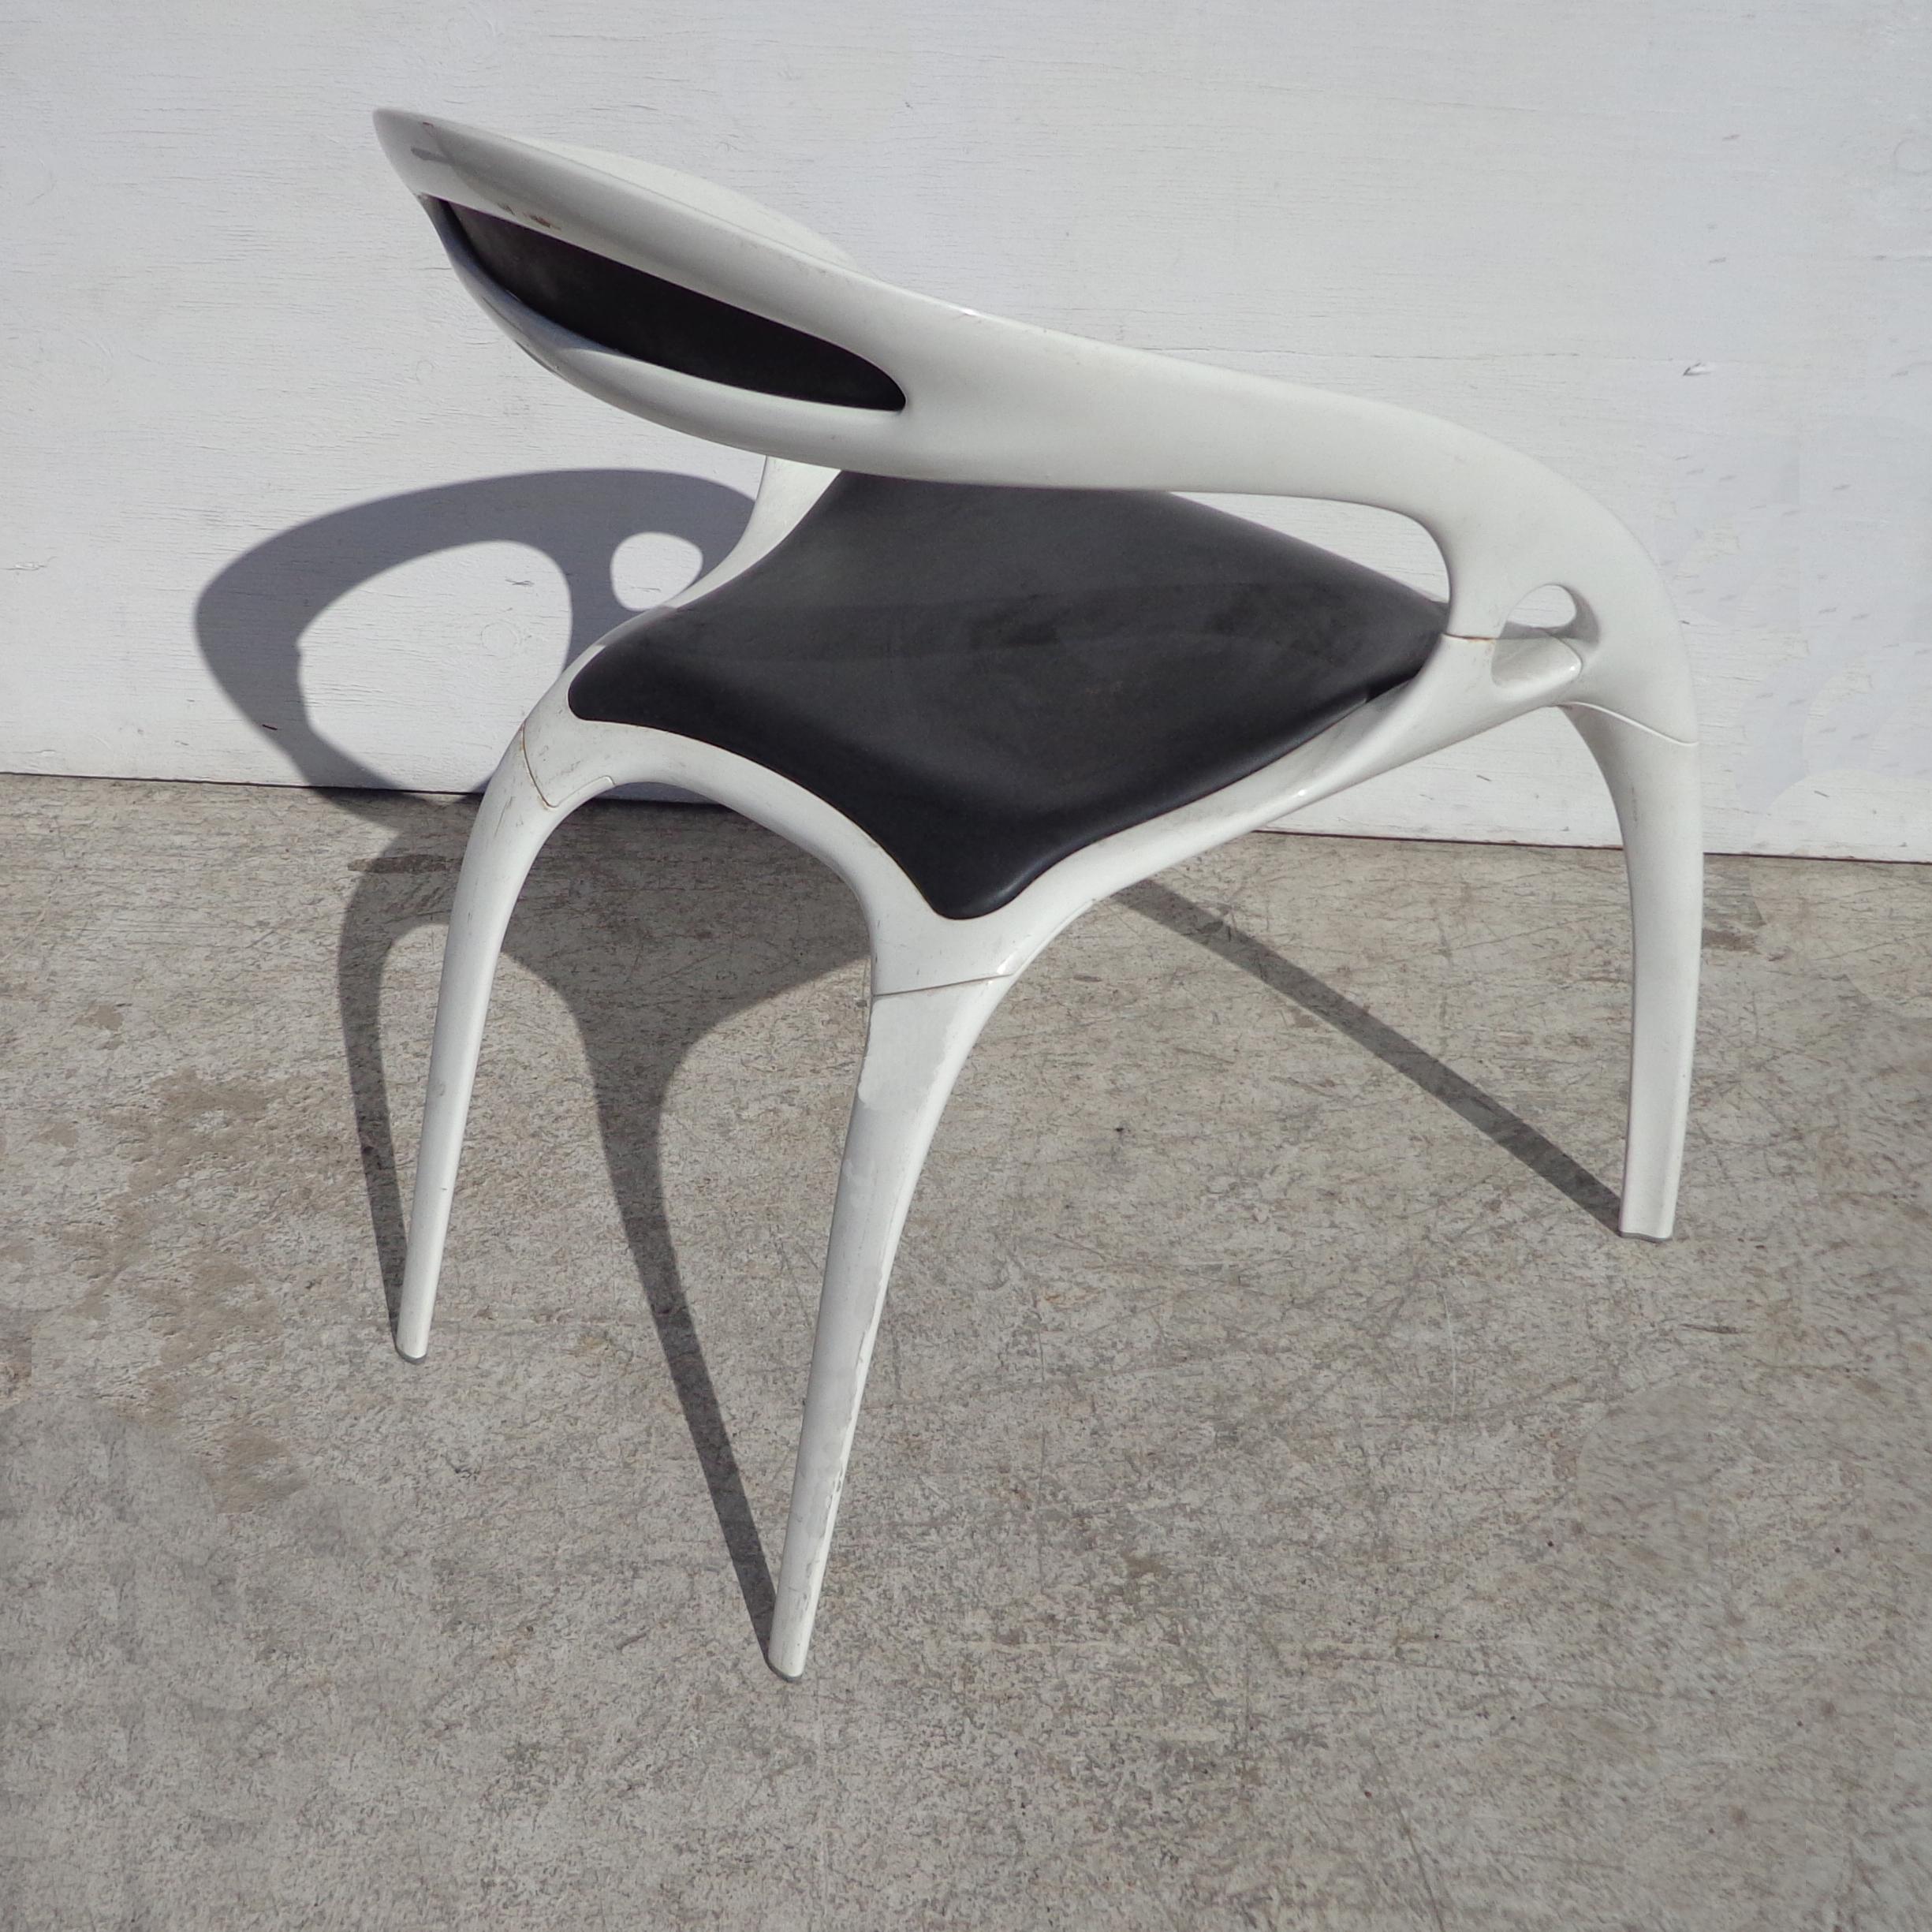 Chaise Go par Ross Lovegrove par Bernhardt Furniture 

Le cadre recouvert de poudre de magnésium et le contour de l'assise rendent la chaise Go unique et très confortable. Les prix sont fixés à l'unité.

Mesures : Largeur : 22.5